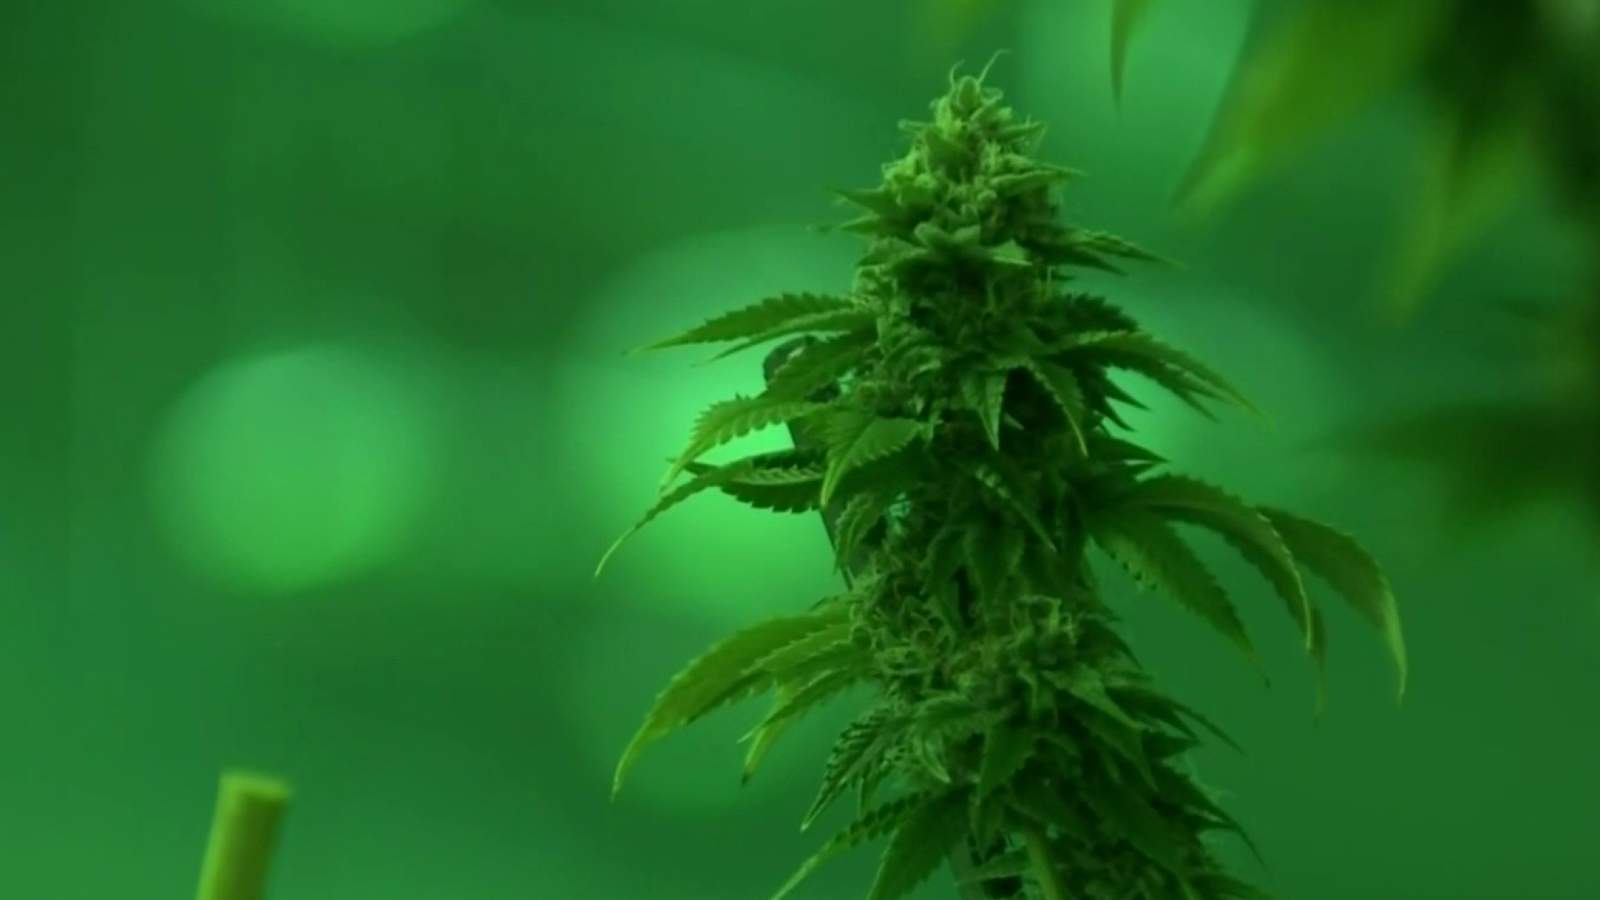 Congress takes up ’MORE Act’ aimed to decriminalize marijuana